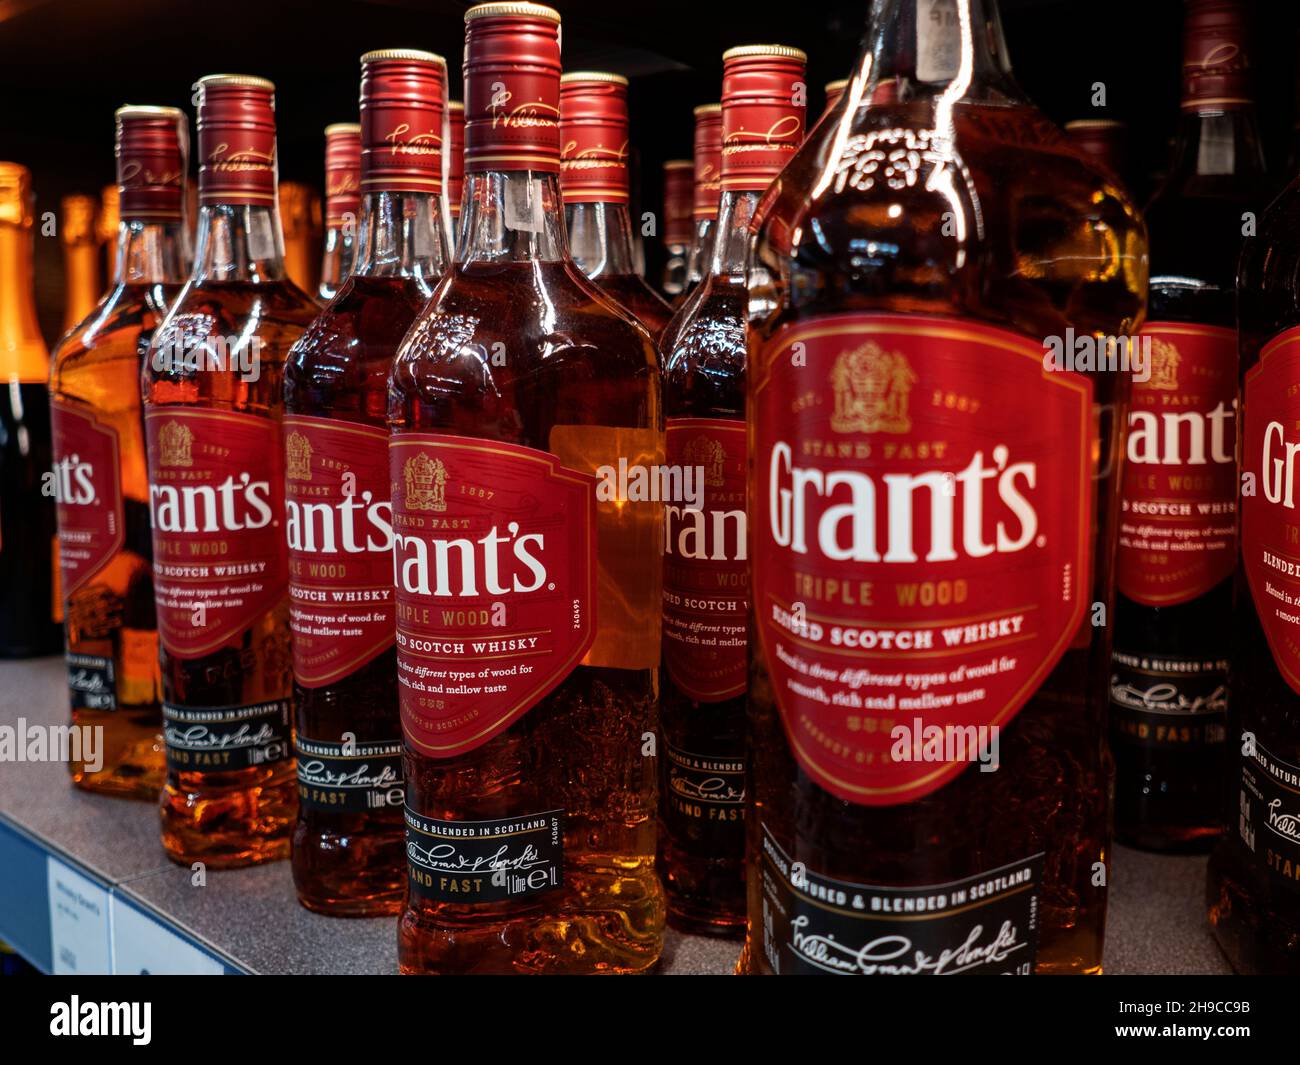 Scotch whisky is store shelf Stock Photo Alamy